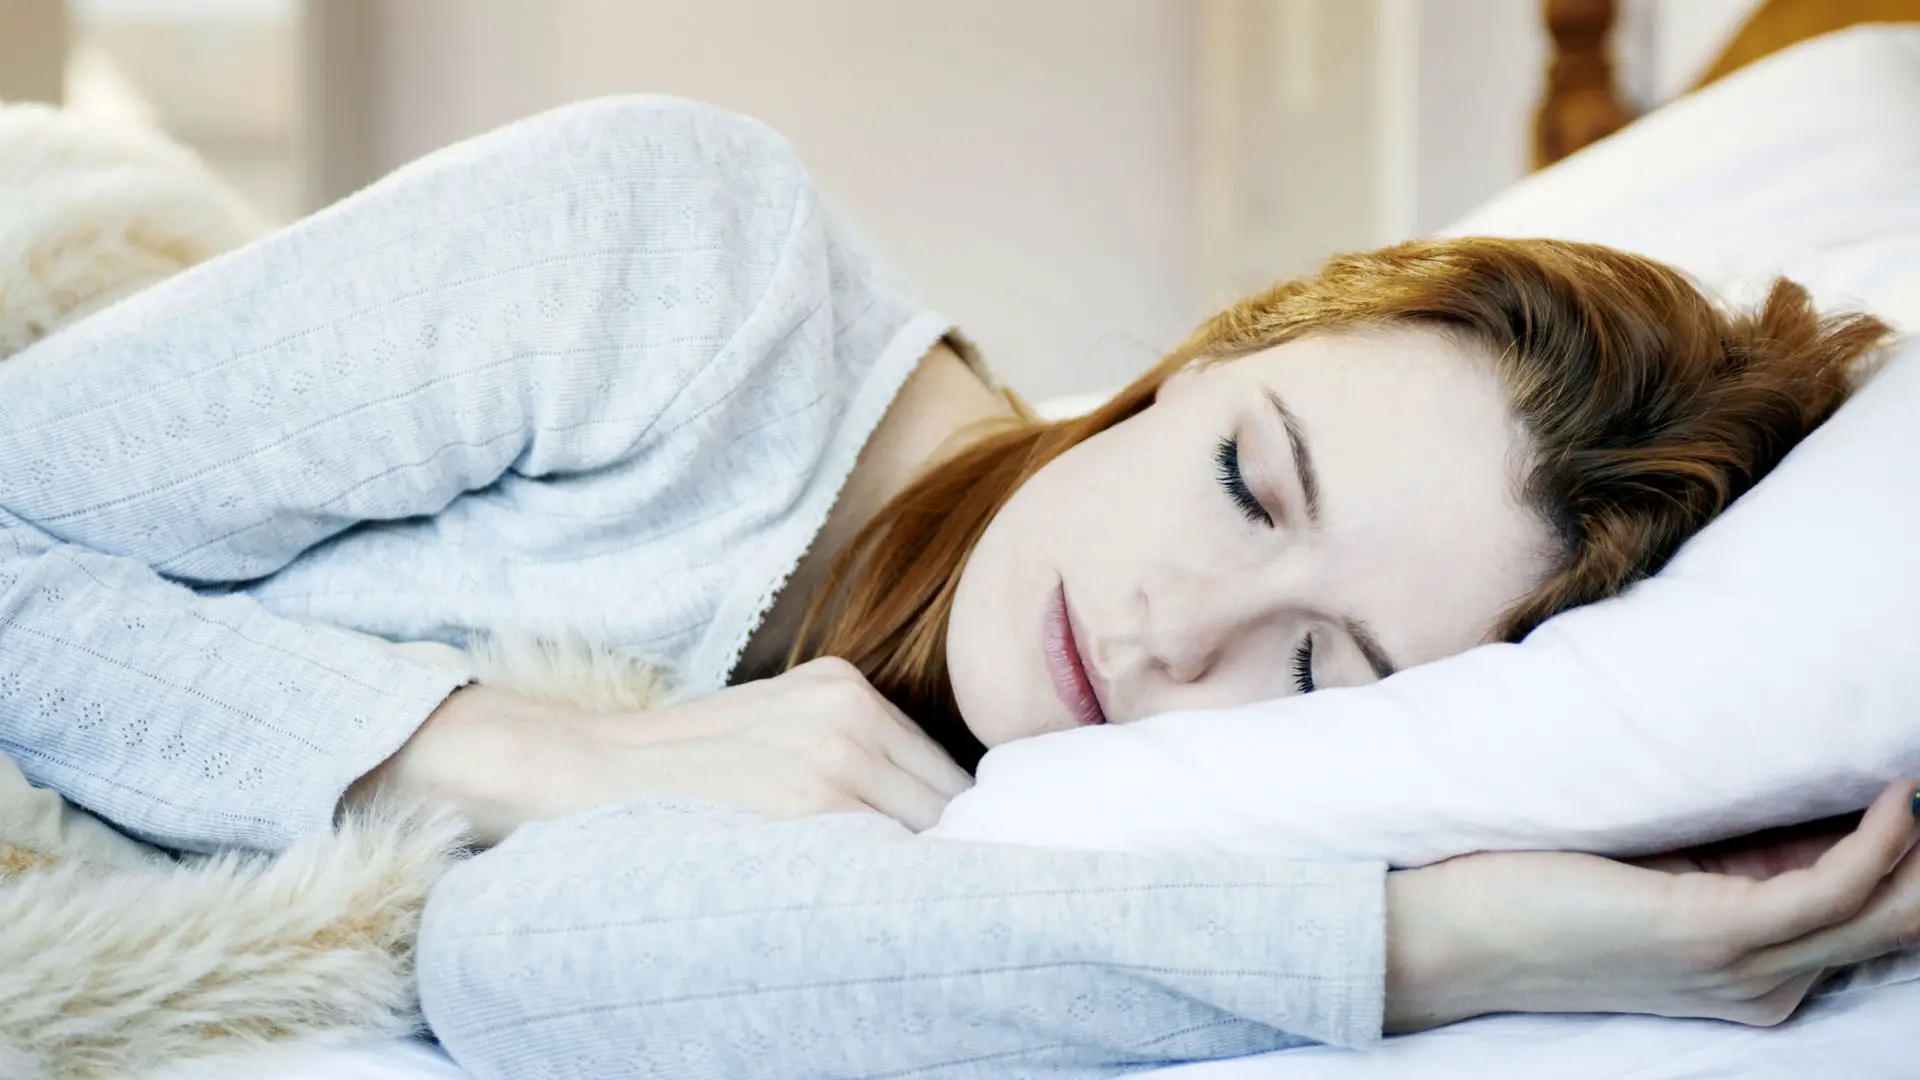 Comment le sommeil affecte-t-il la perte de poids ? l'image montre une femme endormie